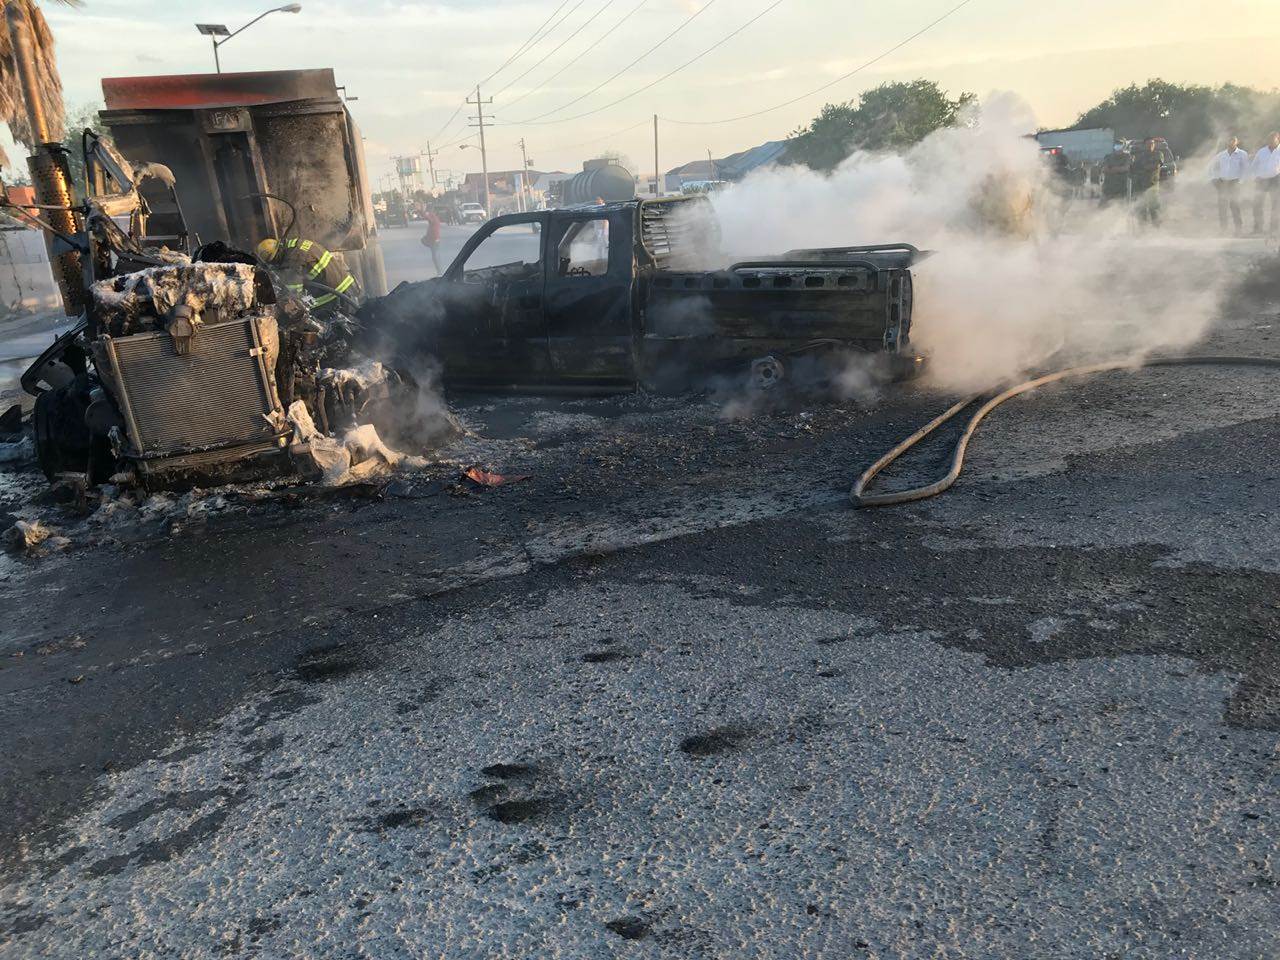 EN CENIZAS. Una camioneta pick-up que se impactó contra un tracto-camión, quedó convertida en cenizas, luego de haberse originado un dantesco incendio que arrojó al menos una persona lesionada con quemaduras. (Foto: Heriberto Rodríguez)